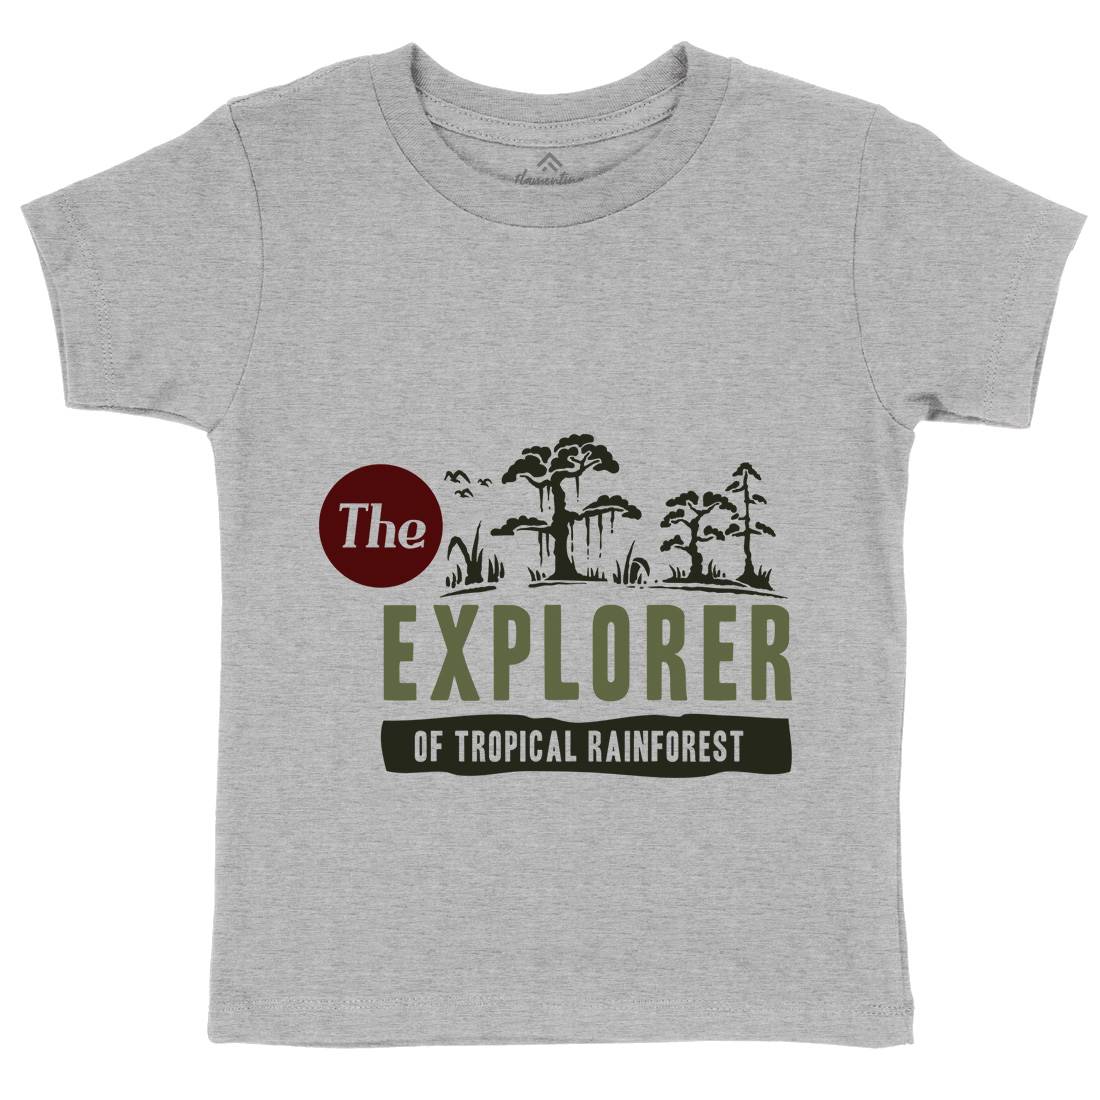 Rainforest Explorer Kids Organic Crew Neck T-Shirt Nature A363